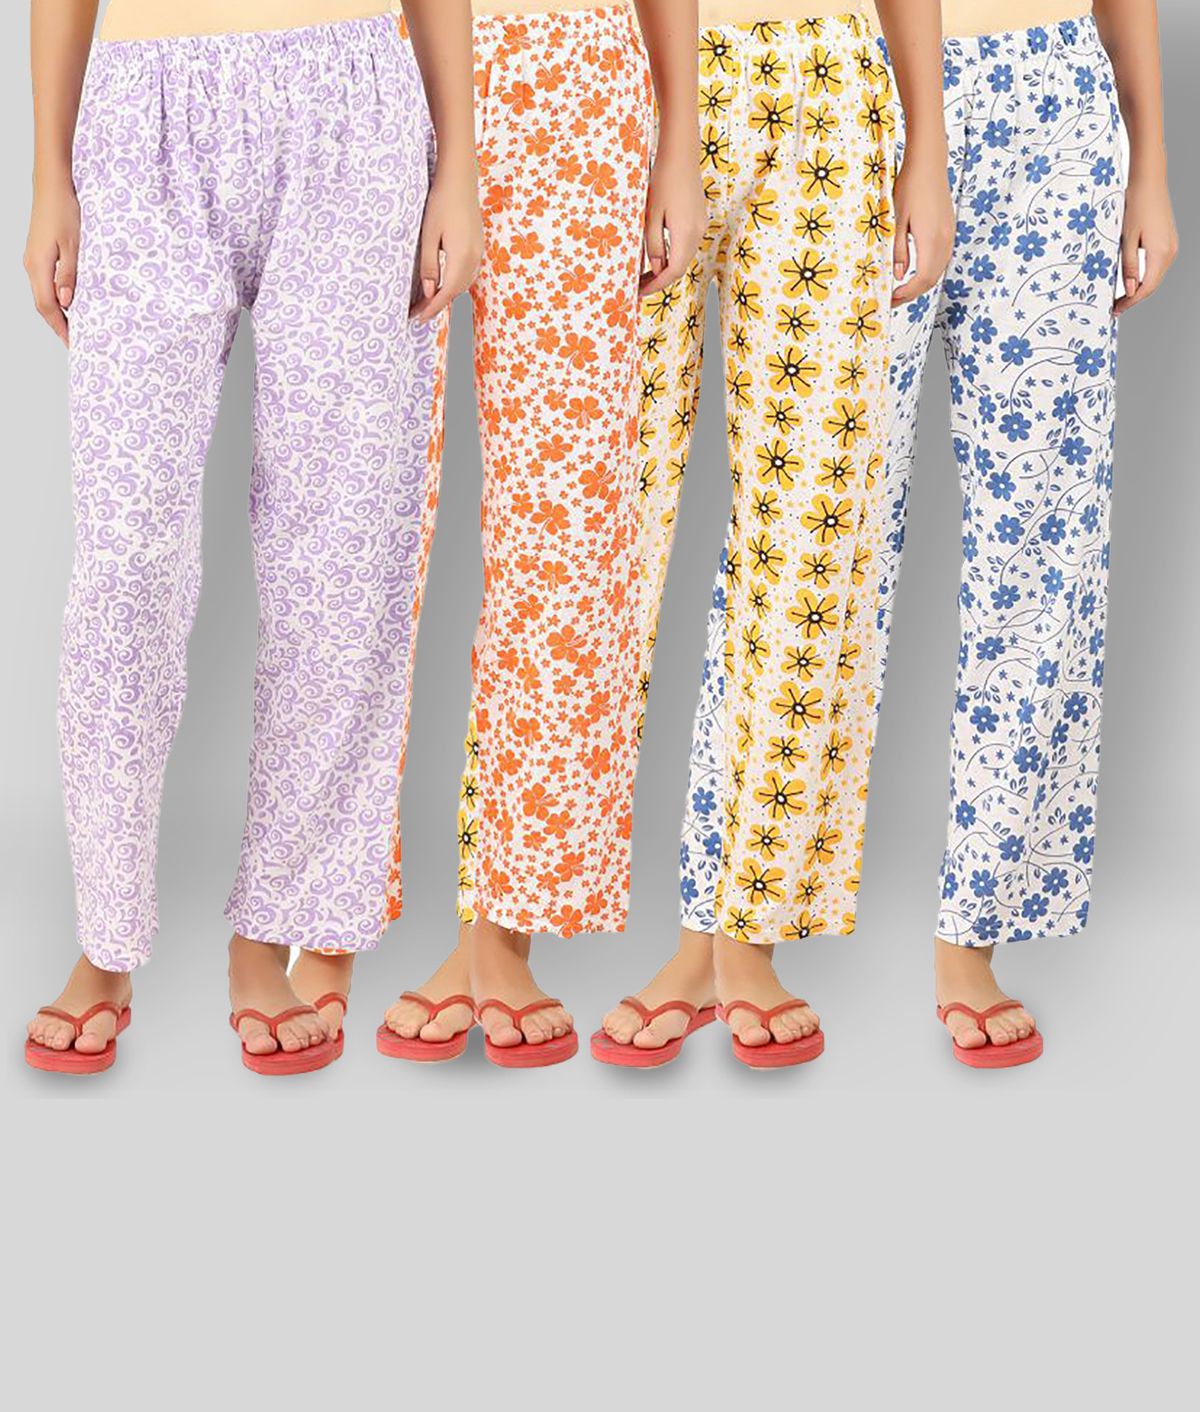     			Cute Angels - Multicolor Cotton Women's Nightwear Pyjama